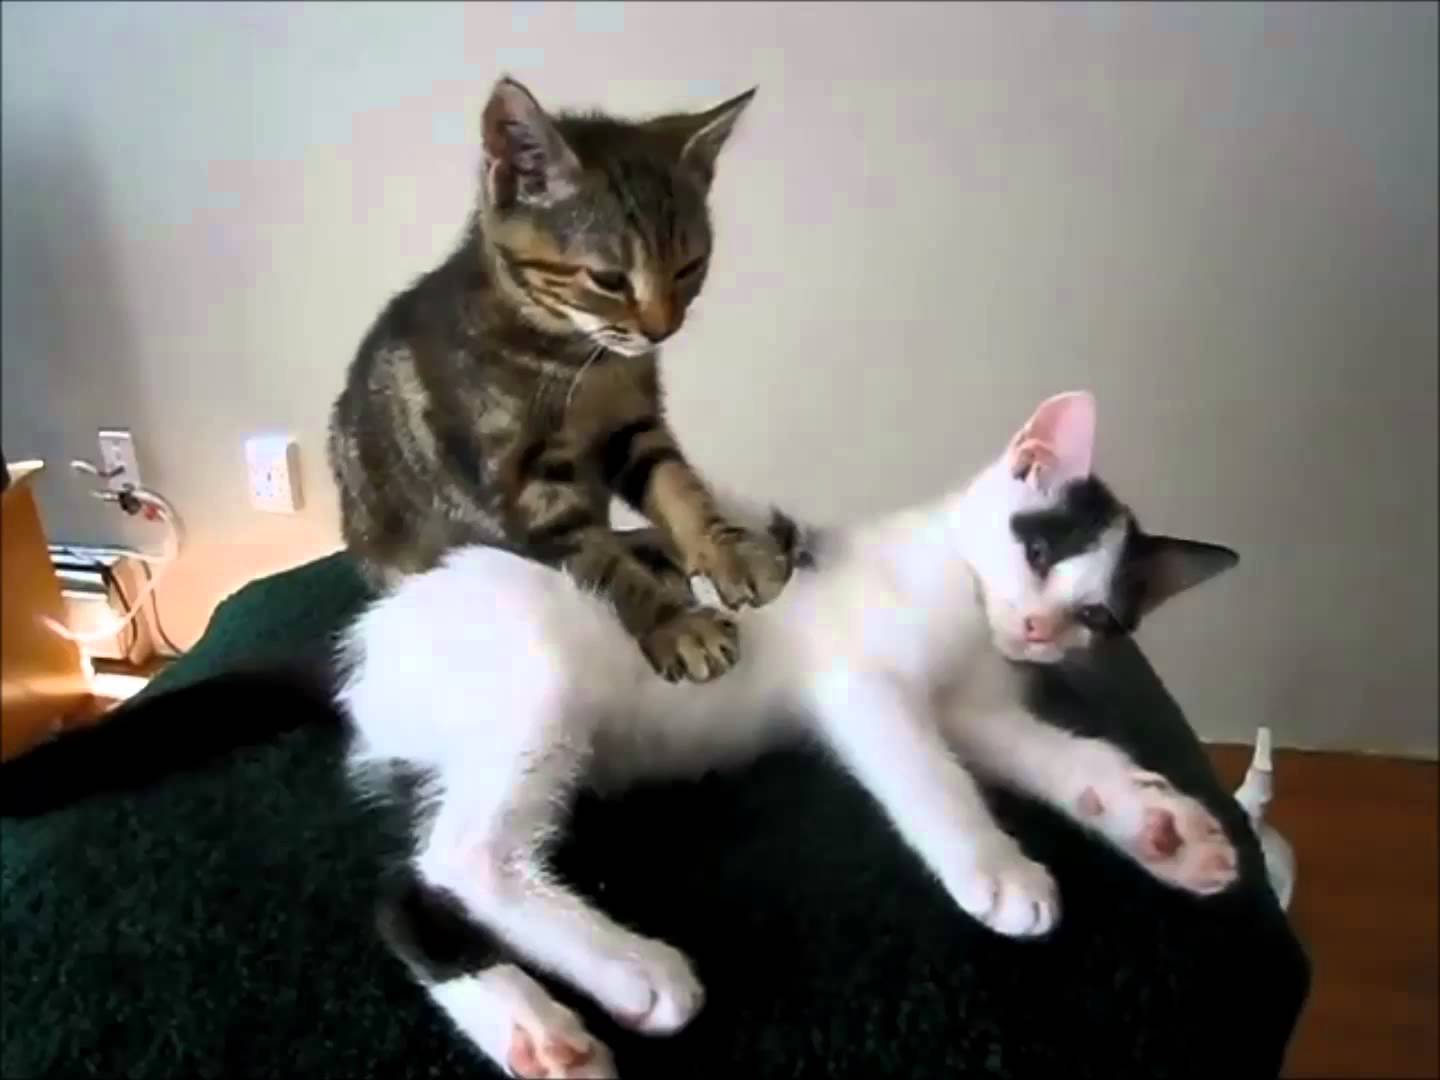 masajes para perros y gatos